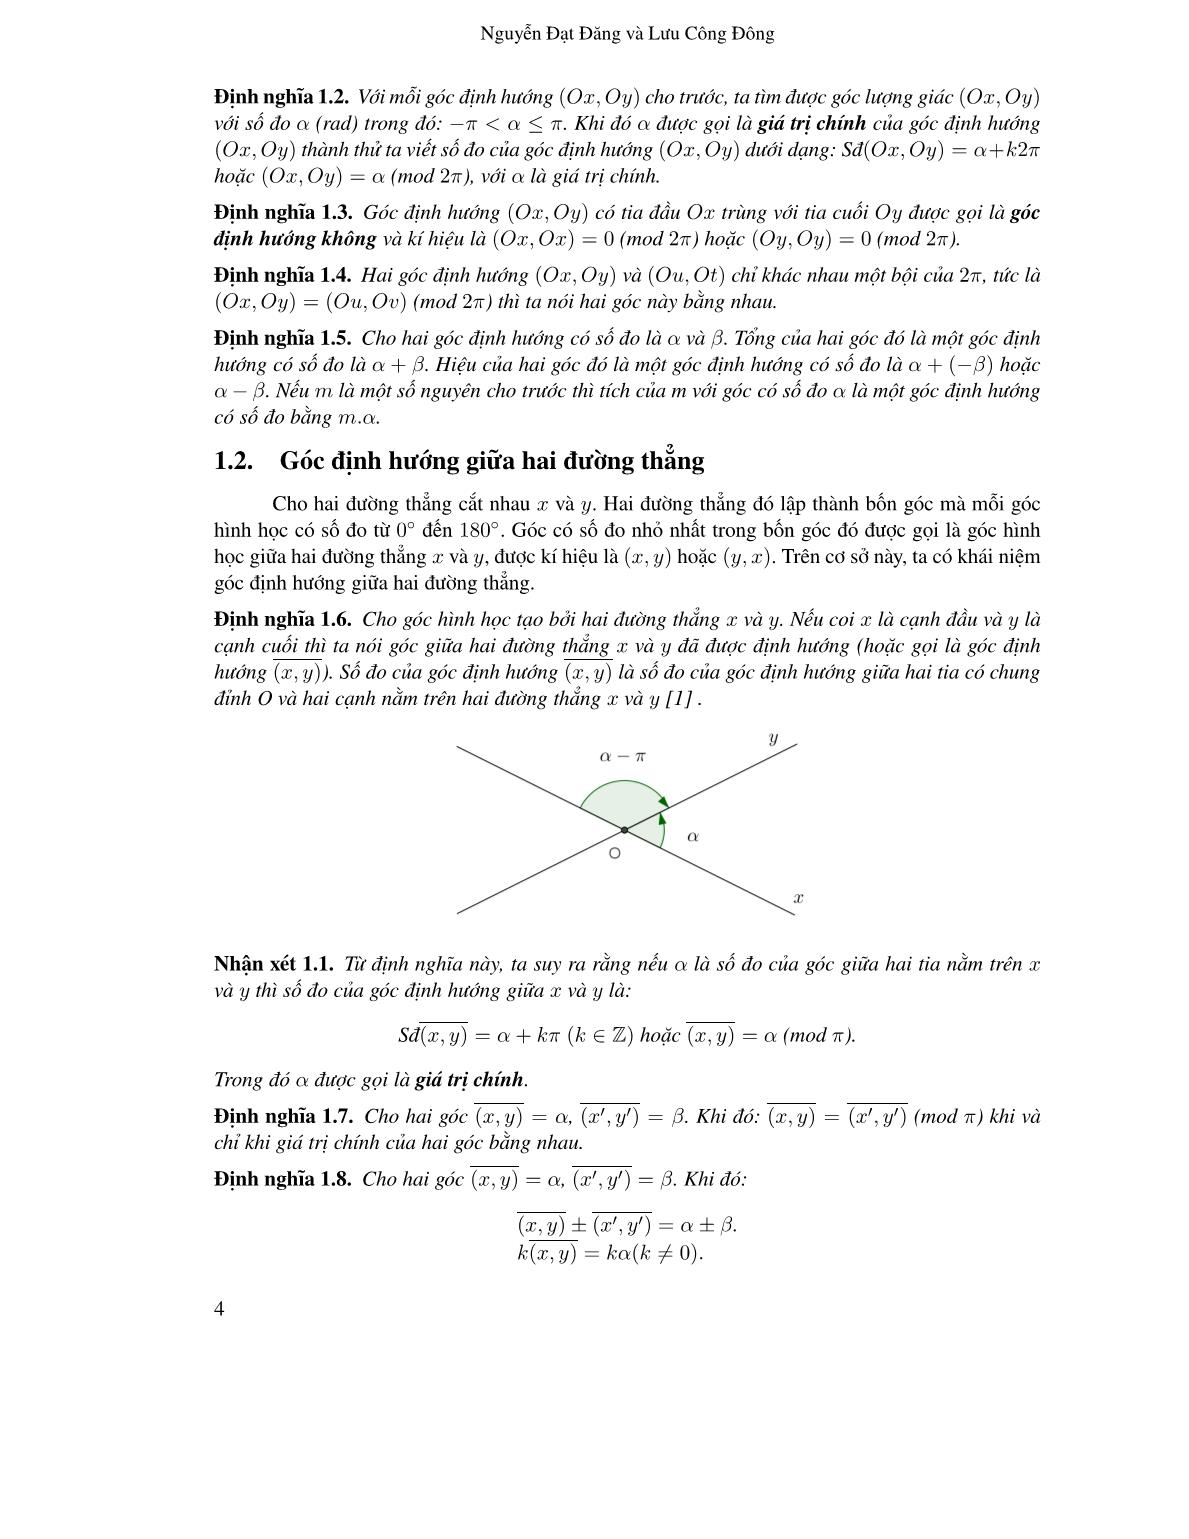 Ứng dụng góc định hướng vào một số bài toán hình học phẳng trang 2